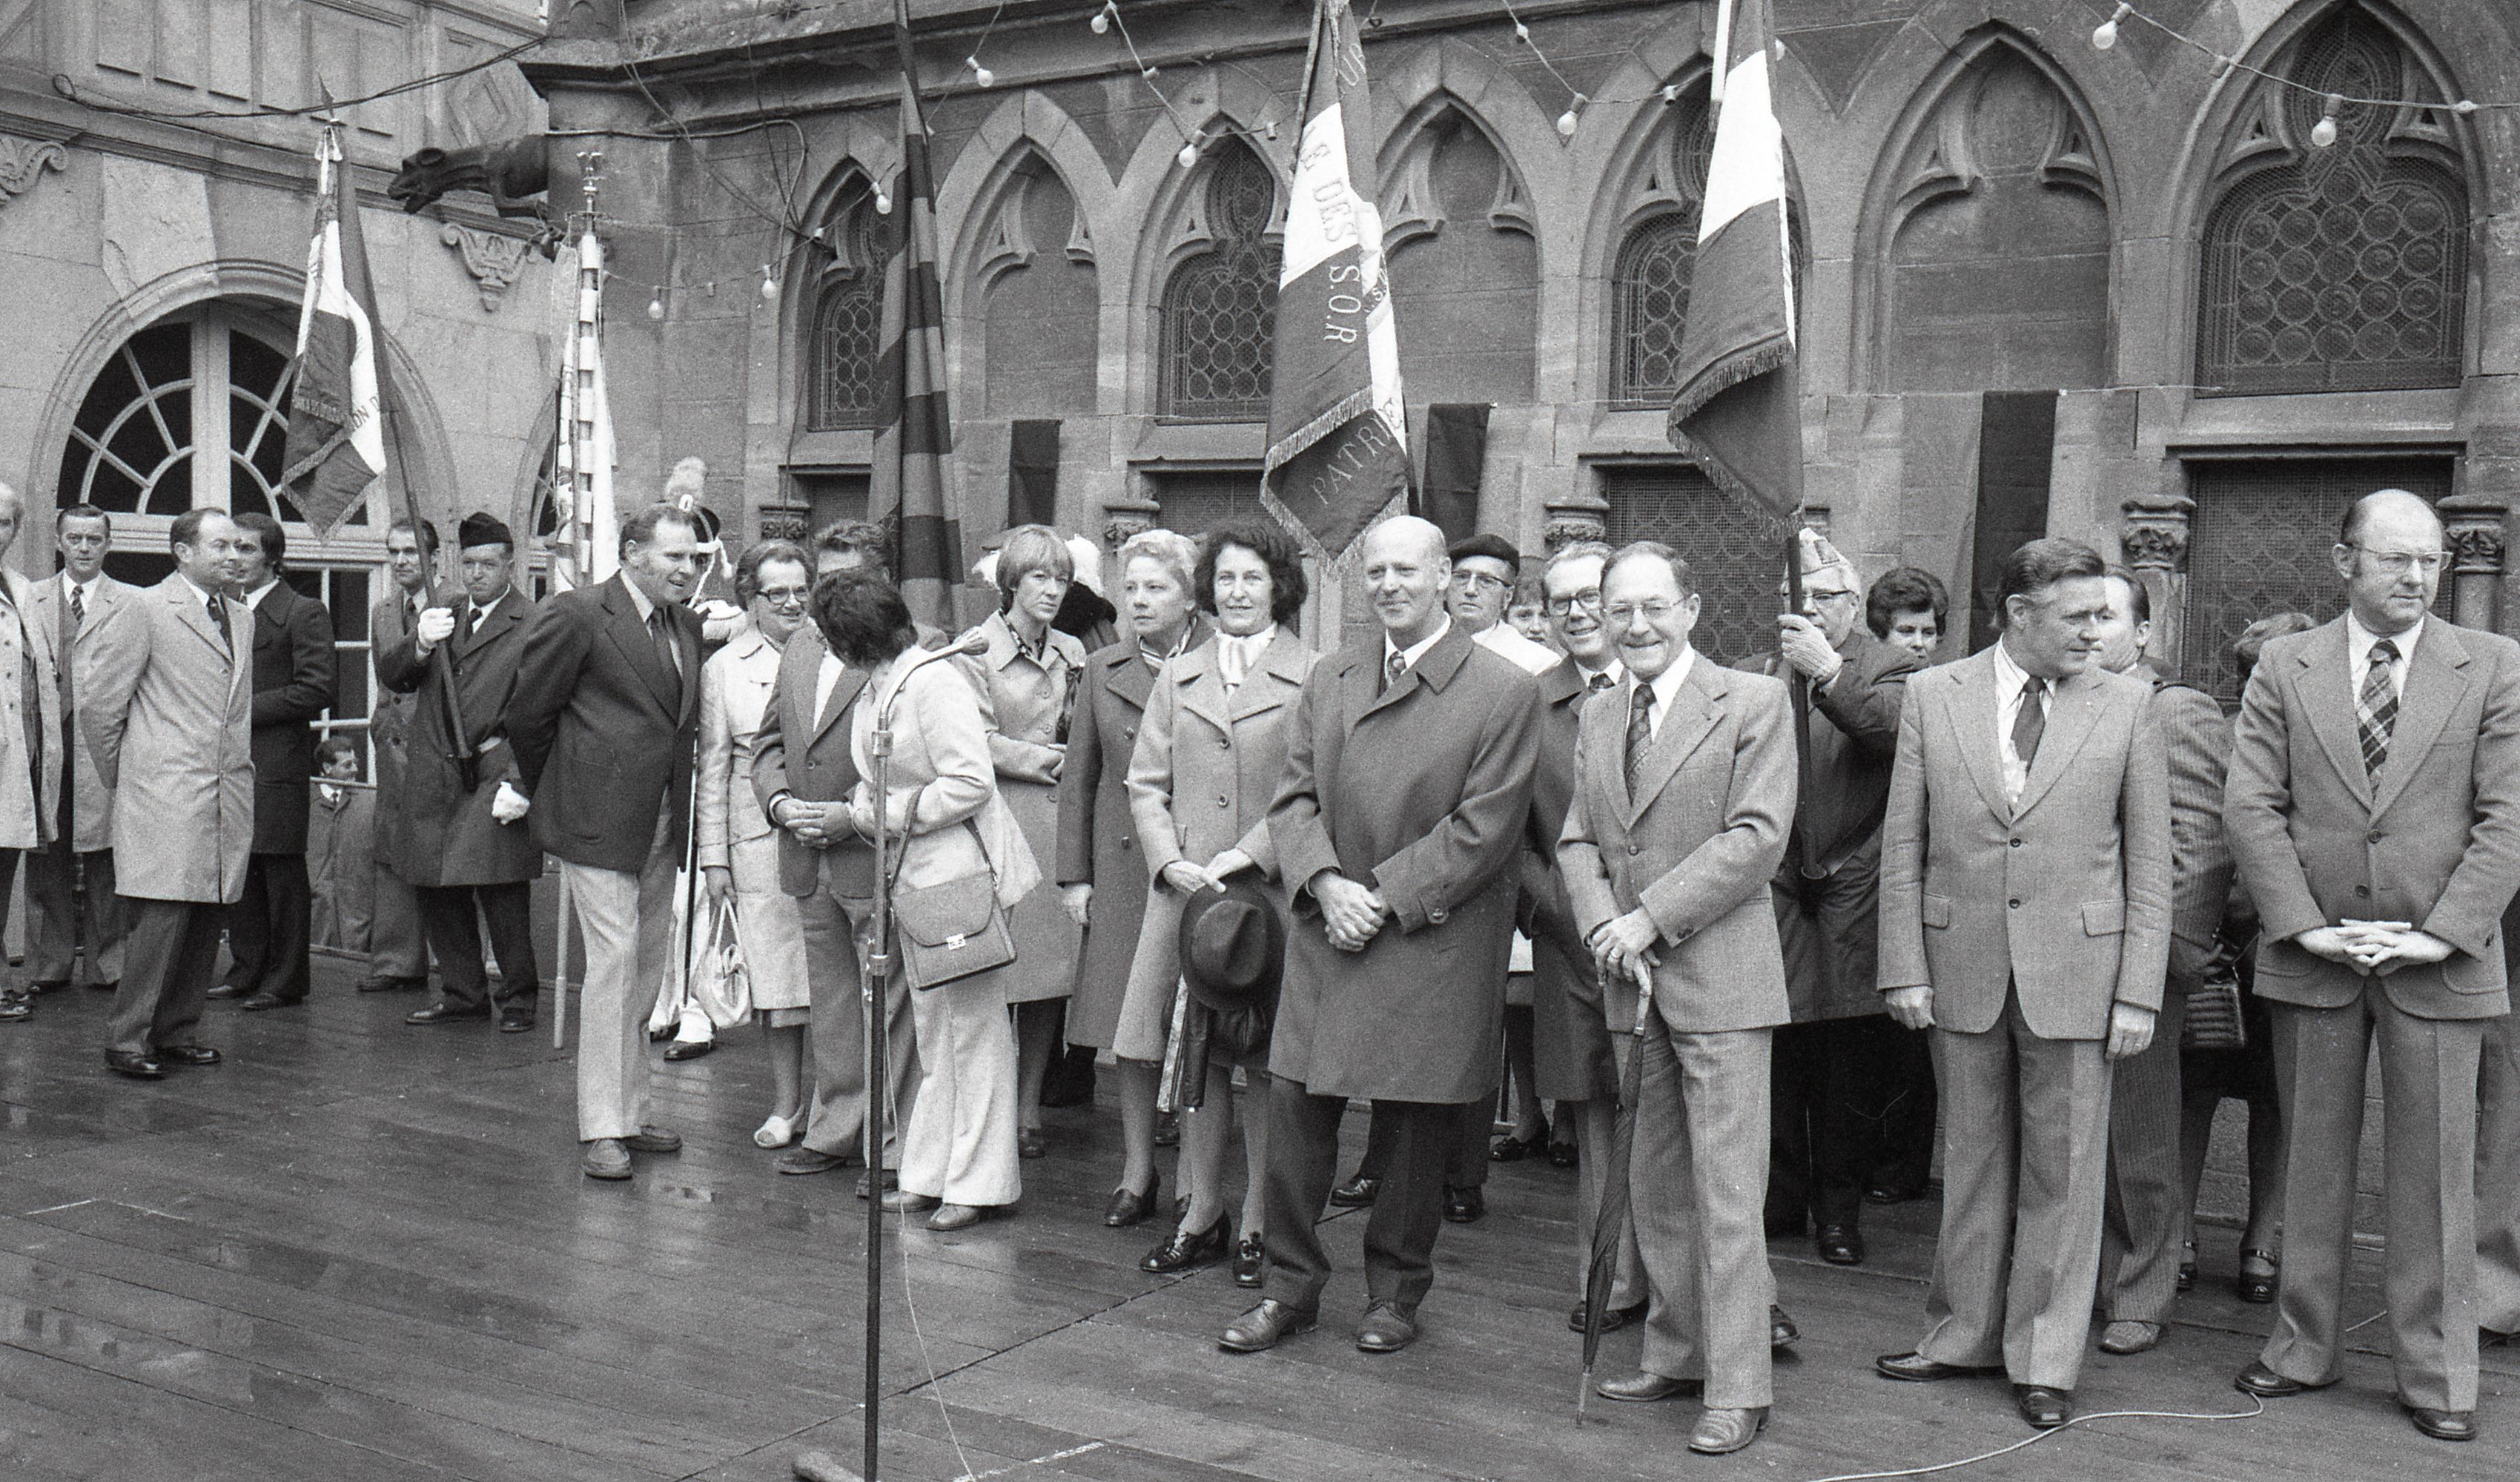 Gruppenbild der Bürgermeister und anderen Personen